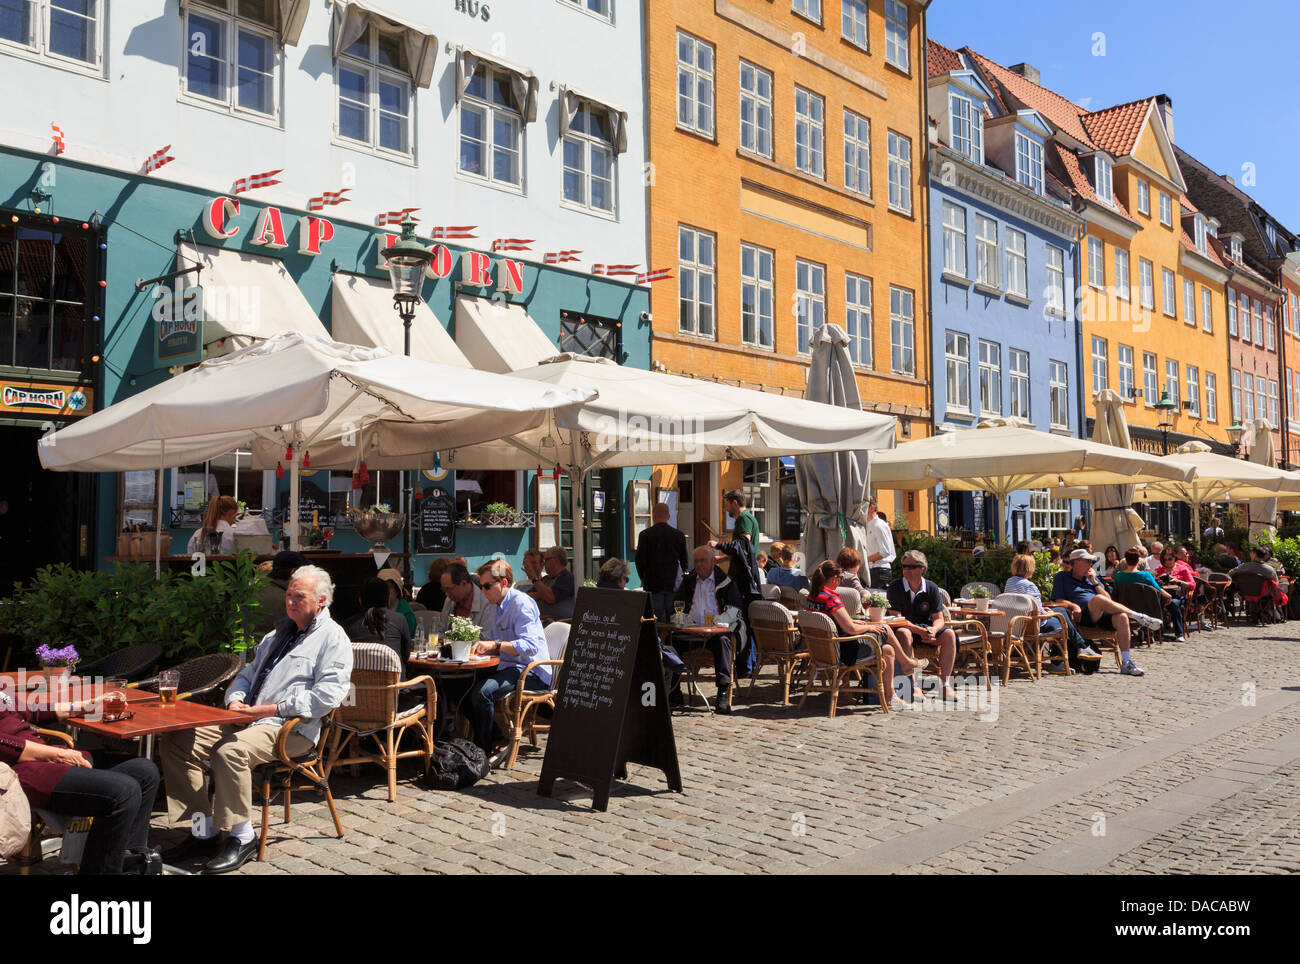 Caffetterie all'aperto con persone cenare fuori a godersi il sole sulla strada pedonale di Nyhavn, Copenaghen, Zelanda, Danimarca Scandinavia Foto Stock